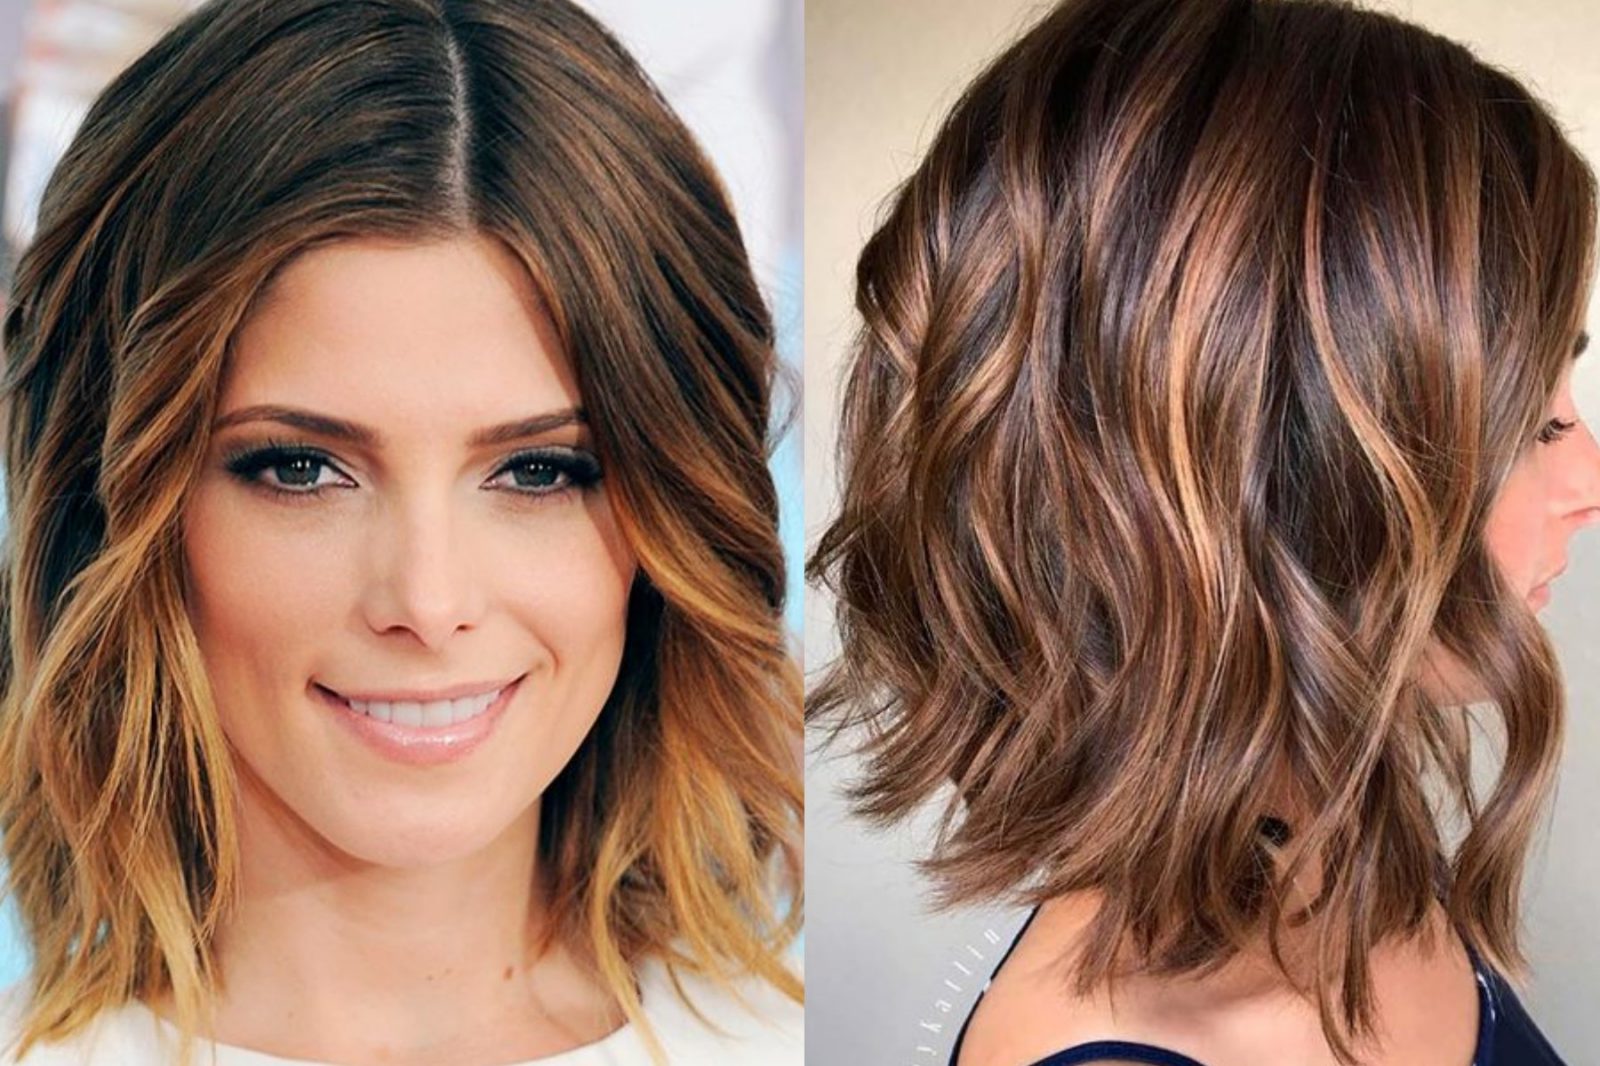 Балаяж на короткие волосы фото на темные волосы фото до и после